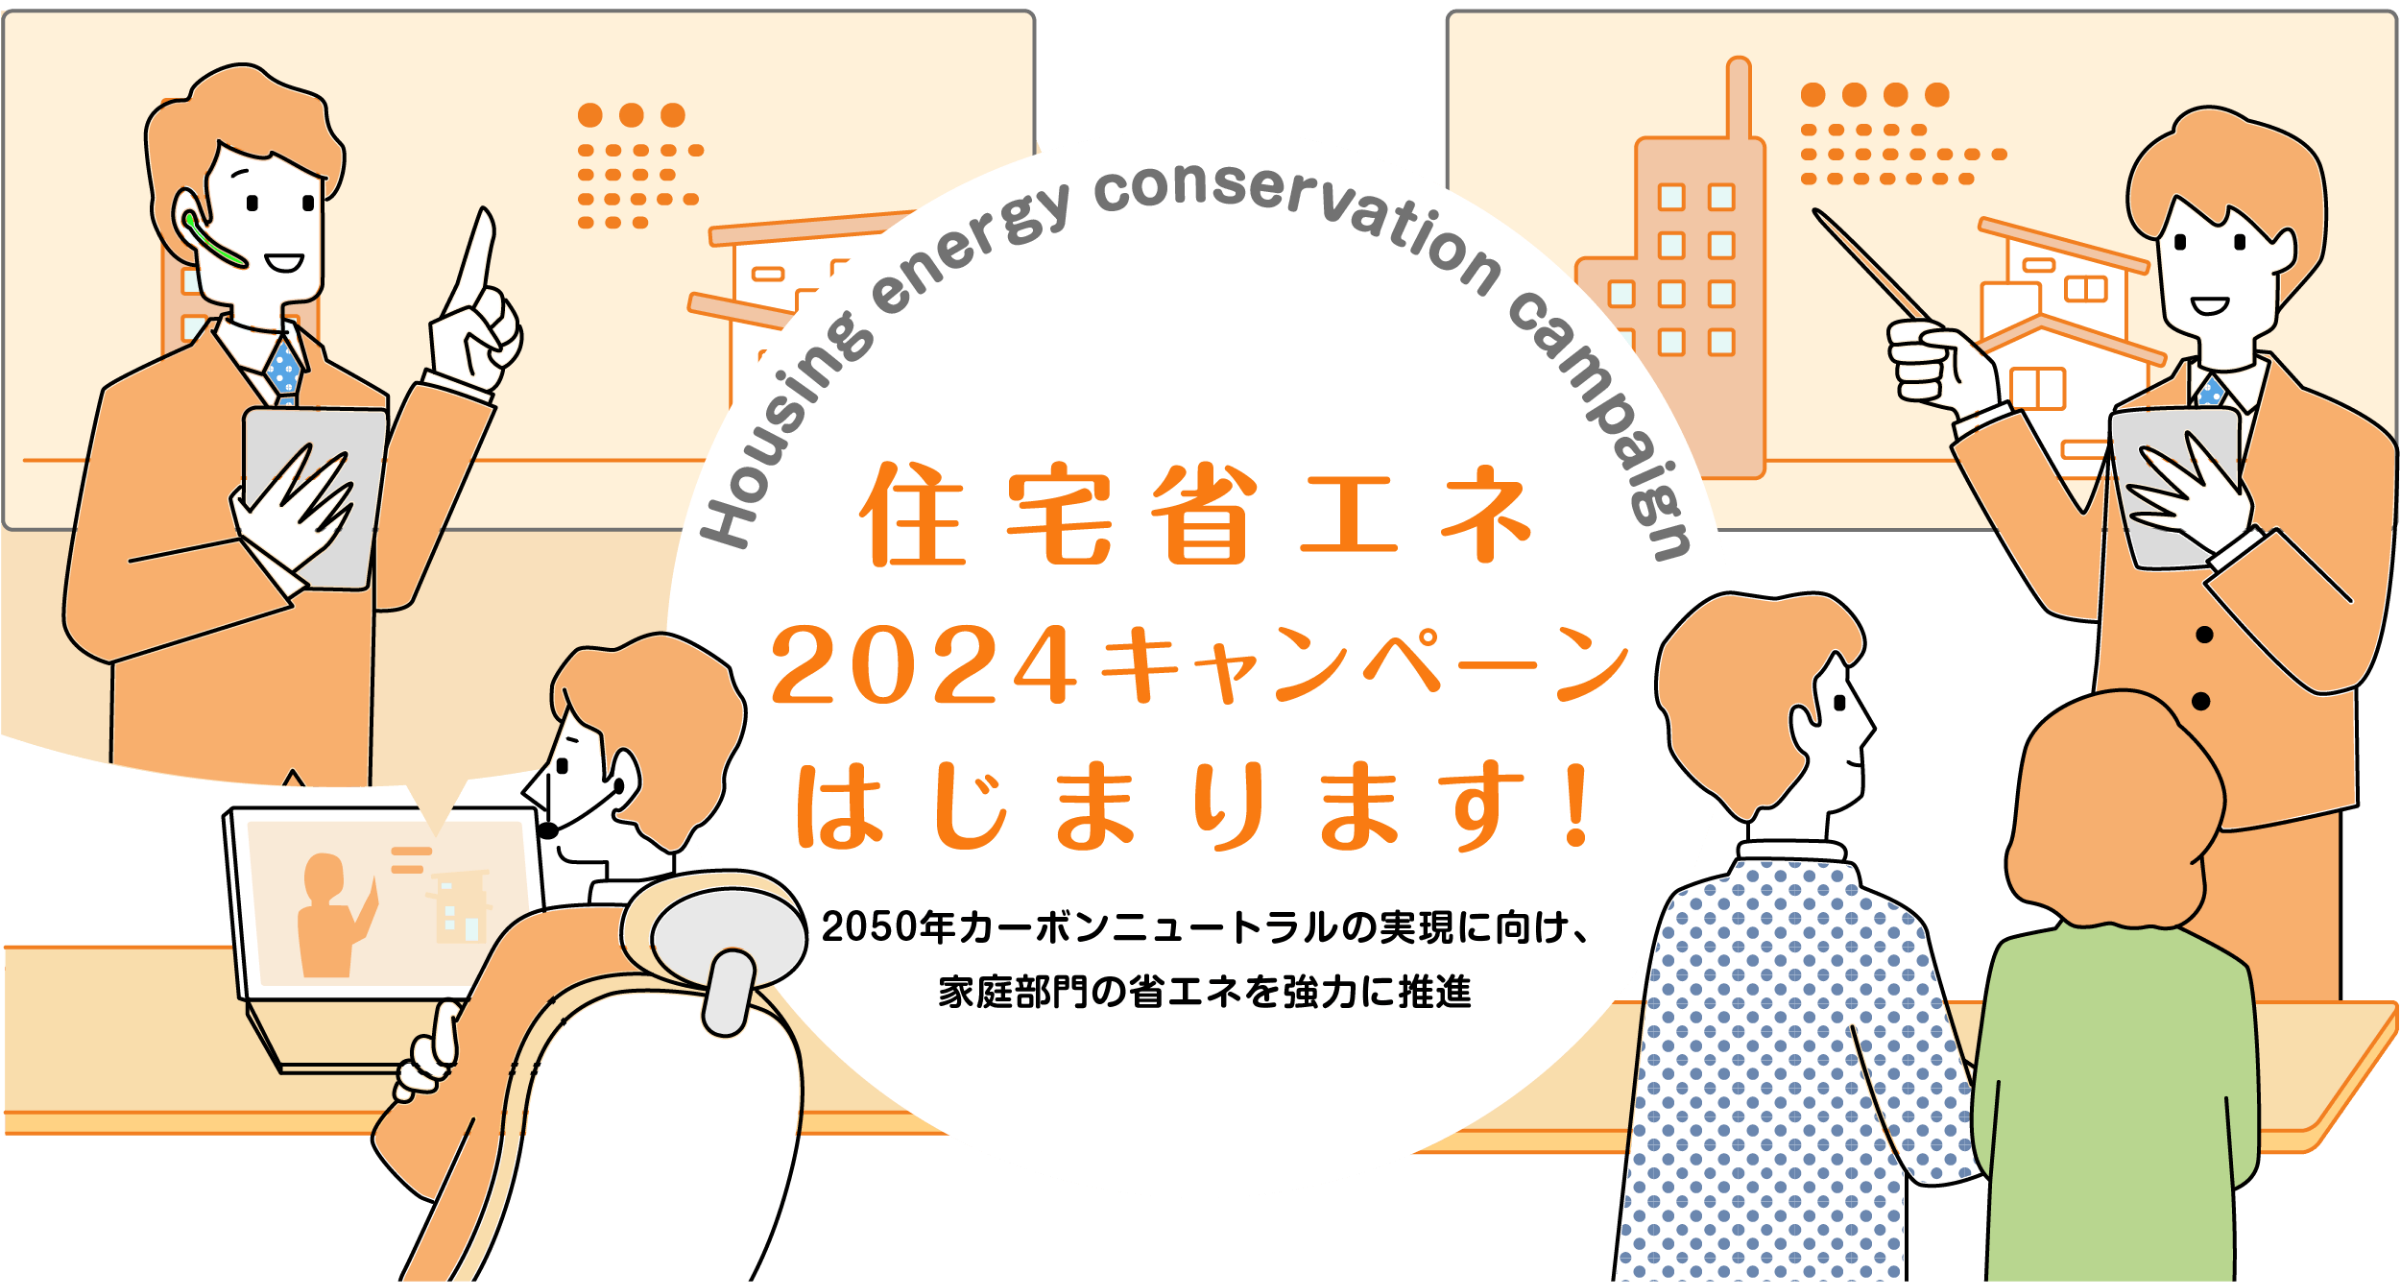 住宅省エネ2023キャンペーンはじまります！2050年カーボンニュートラルの実現に向け、家庭部門の省エネを強力に推進〜Housing energy conservation campaign